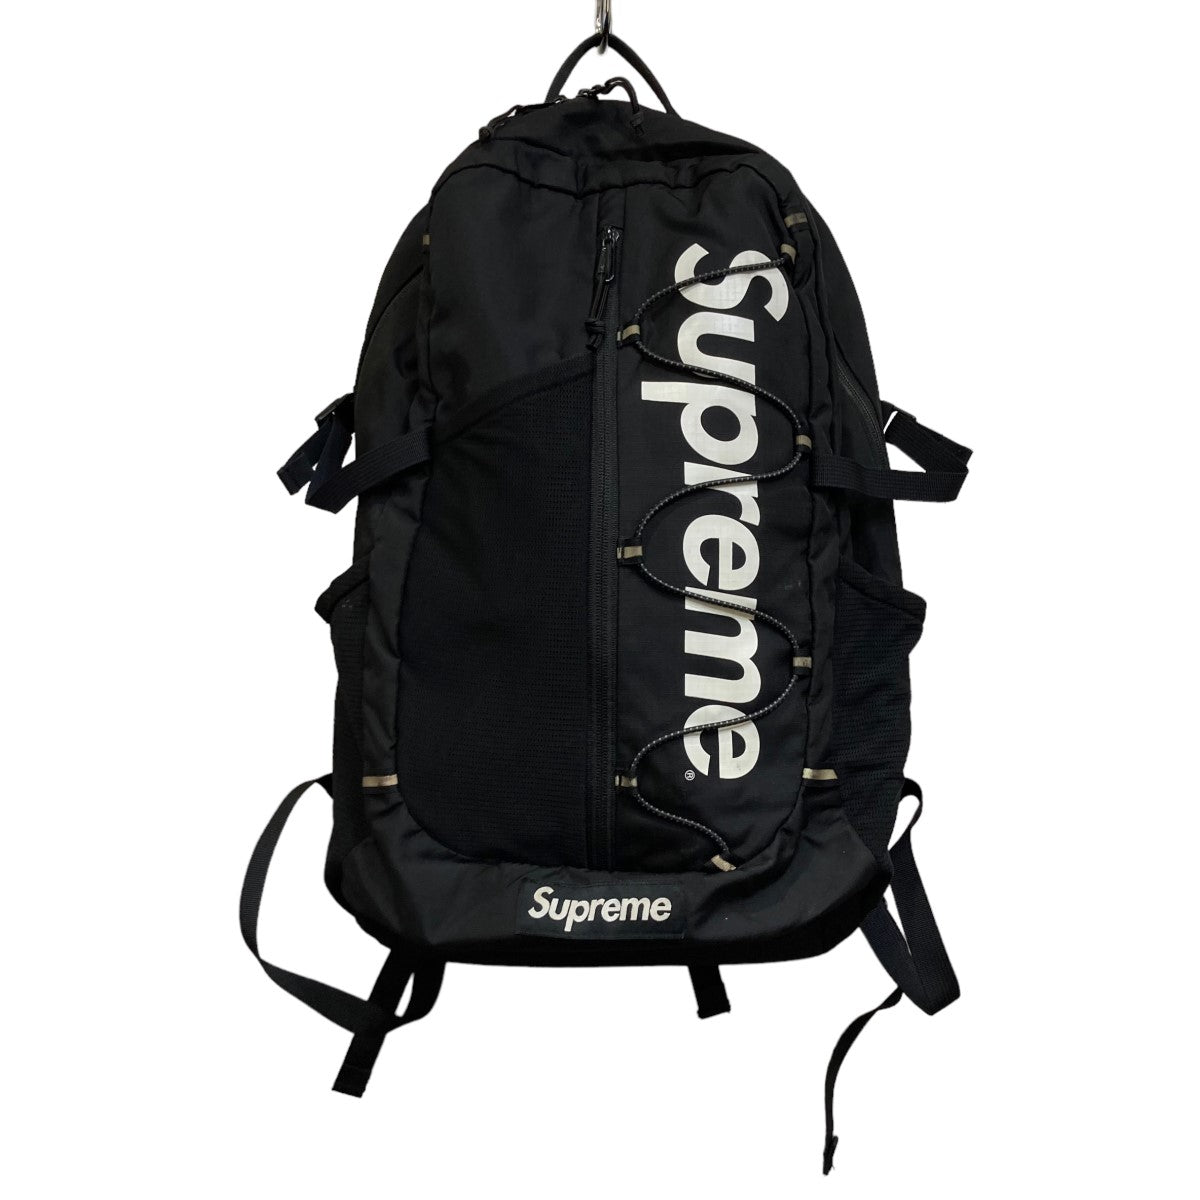 画像に載っている商品のみですSupreme 11fw Backpack black 黒 バックパック